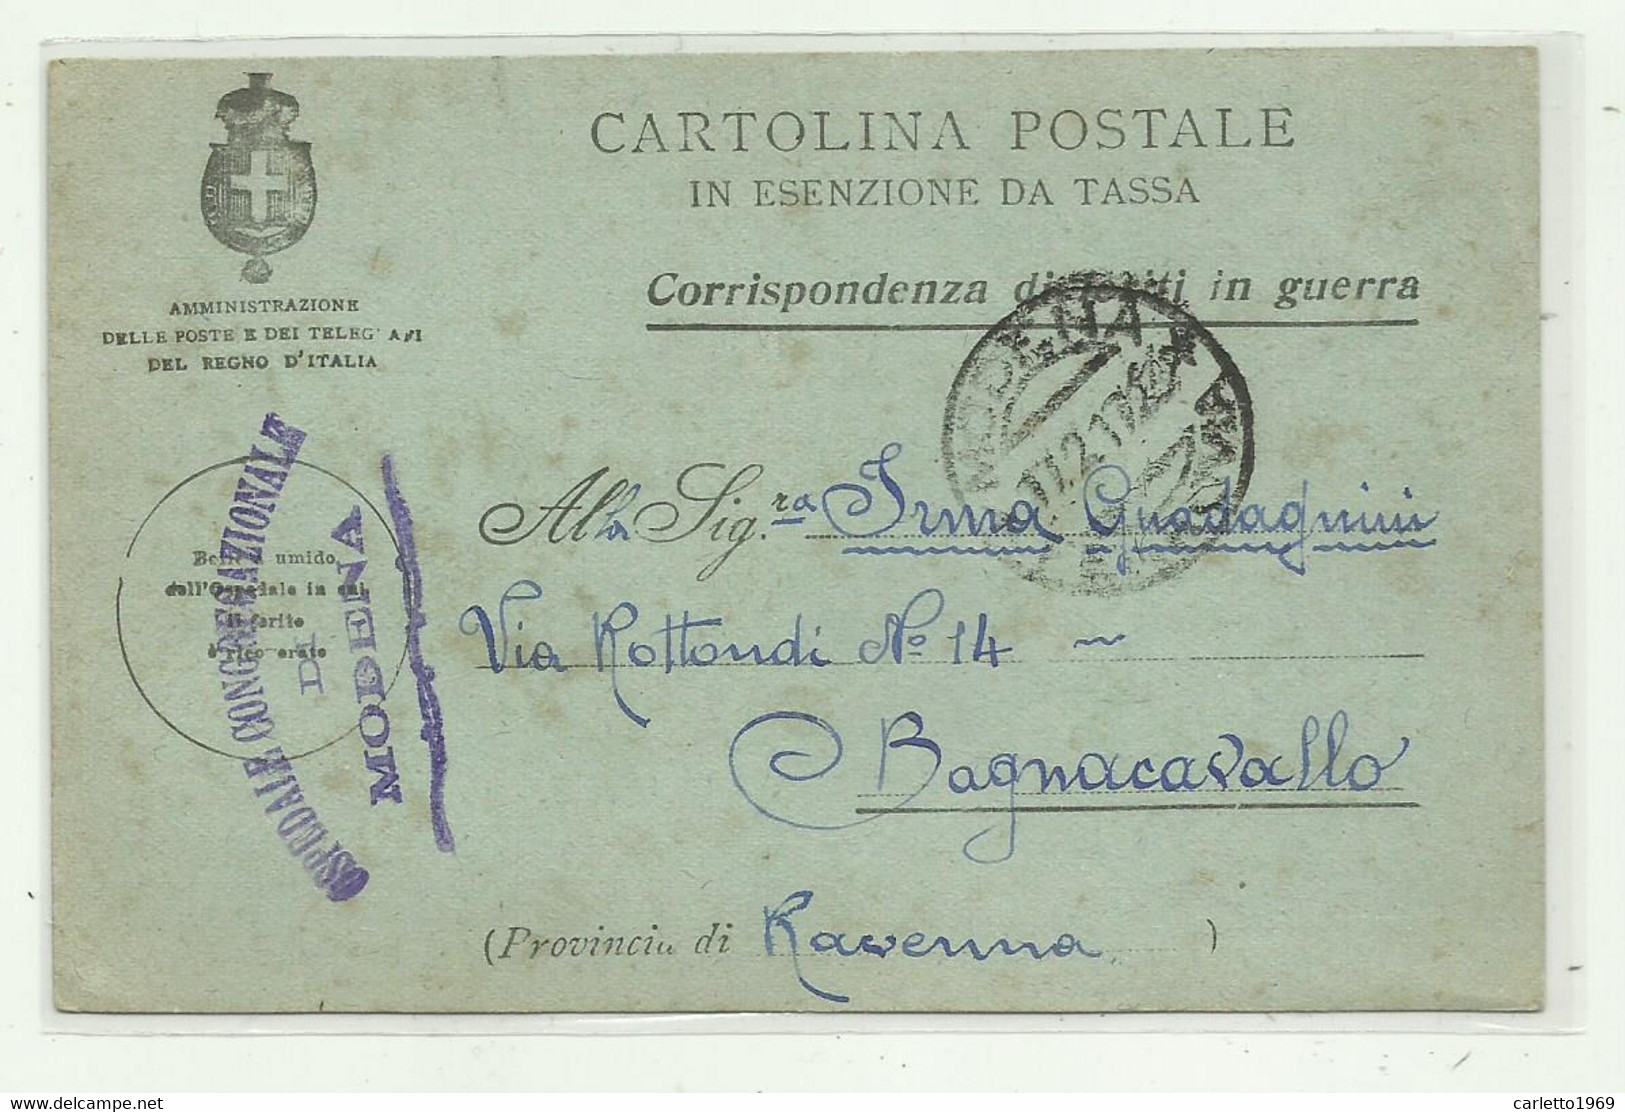 CARTOLINA POSTALE - CORRISPONDENZA DI FERITI IN GUERRA - OSPEDALE CONGREGAZIONALE MODENA 1917 - Franchise